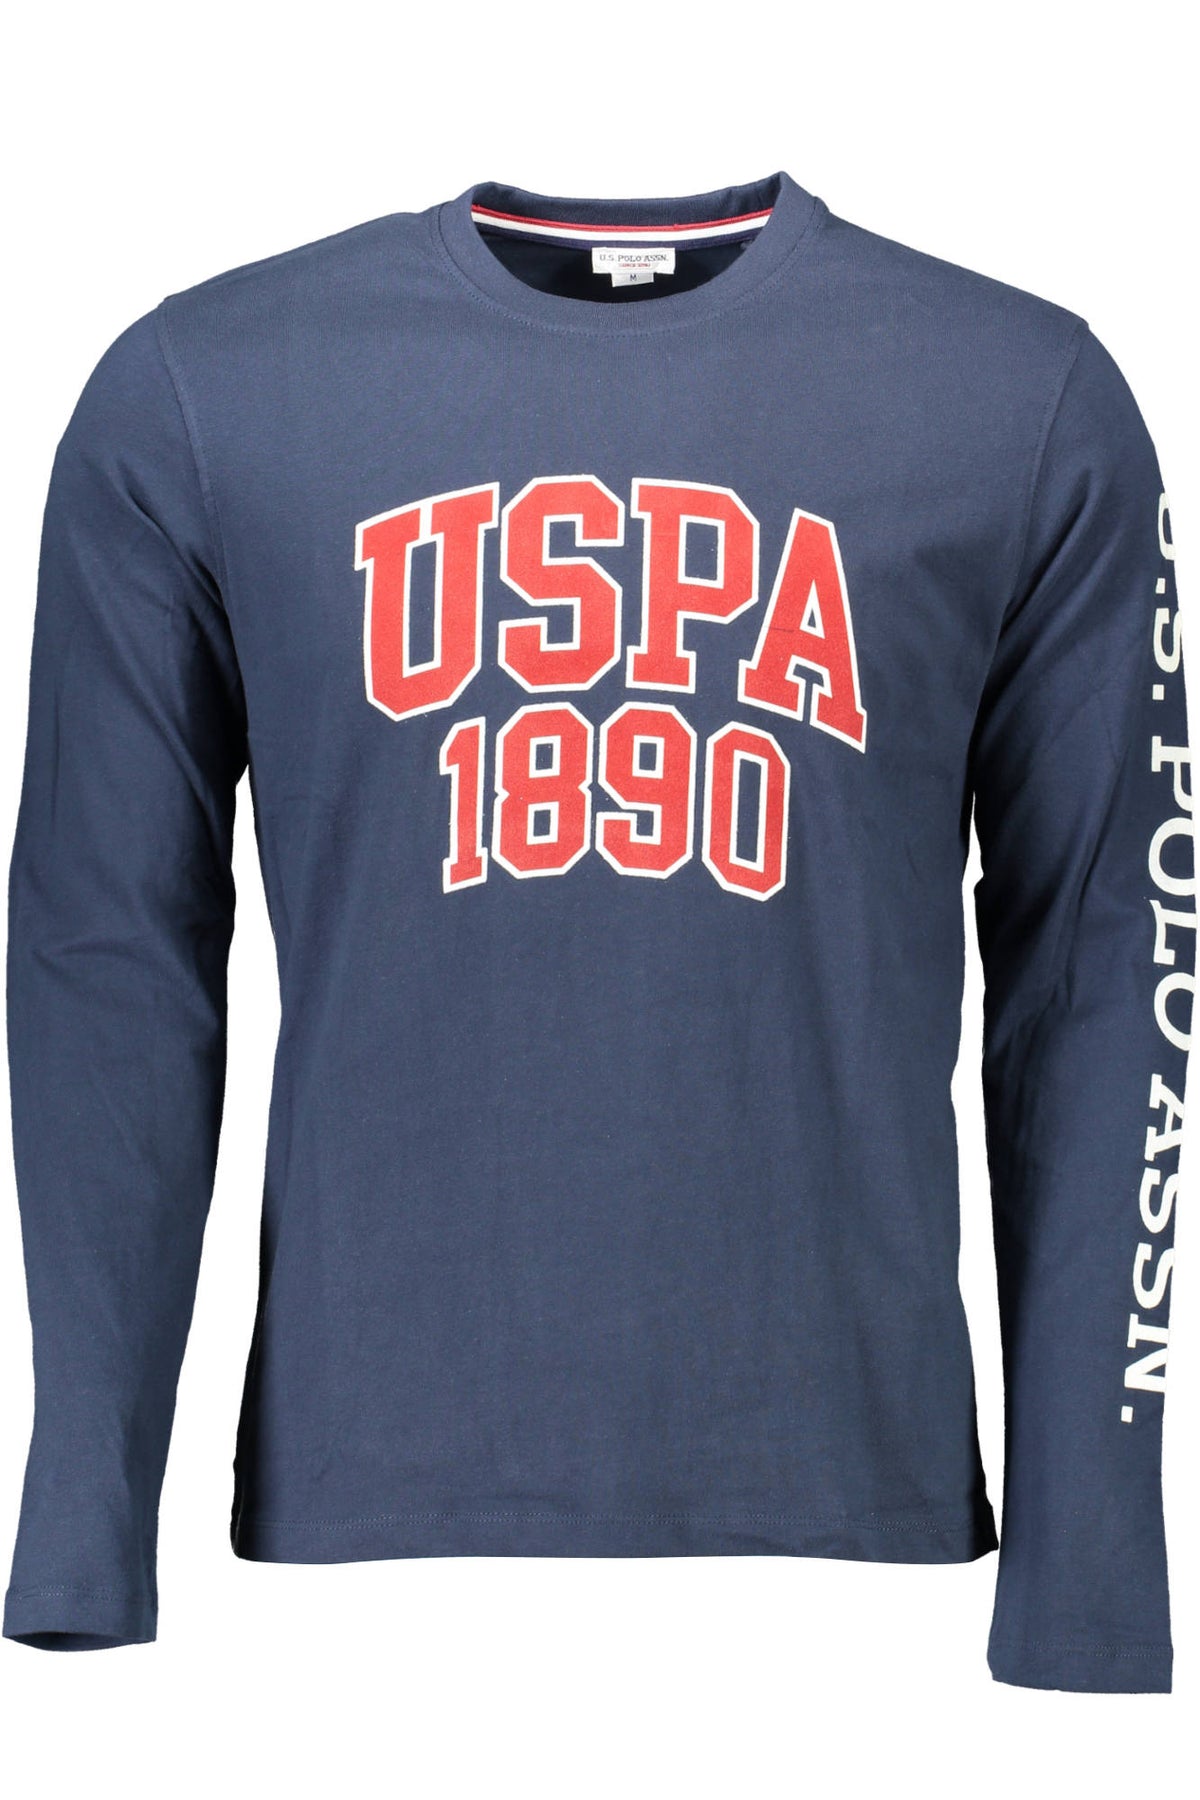 U.S. POLO Herren T-Shirt Shirt Sweatshirt Oberteil mit Rundhalsausschnitt, langärmlig